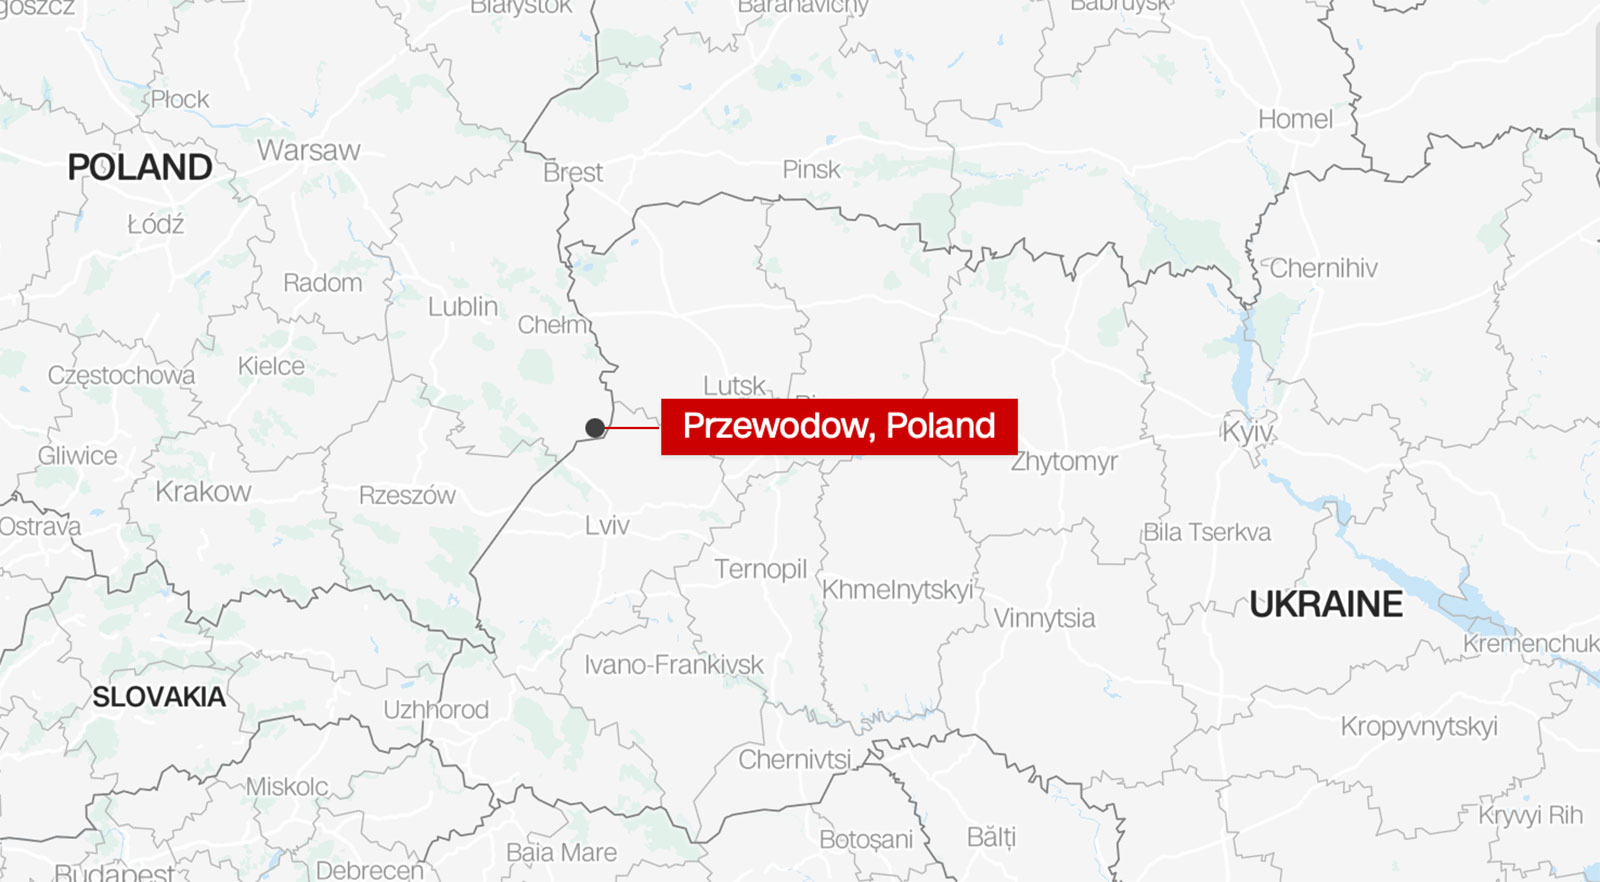 Pojawiły się doniesienia o rakietach lub pociskach, które uderzyły w Polskę w pobliżu granicy z Ukrainą, zabijając dwie osoby